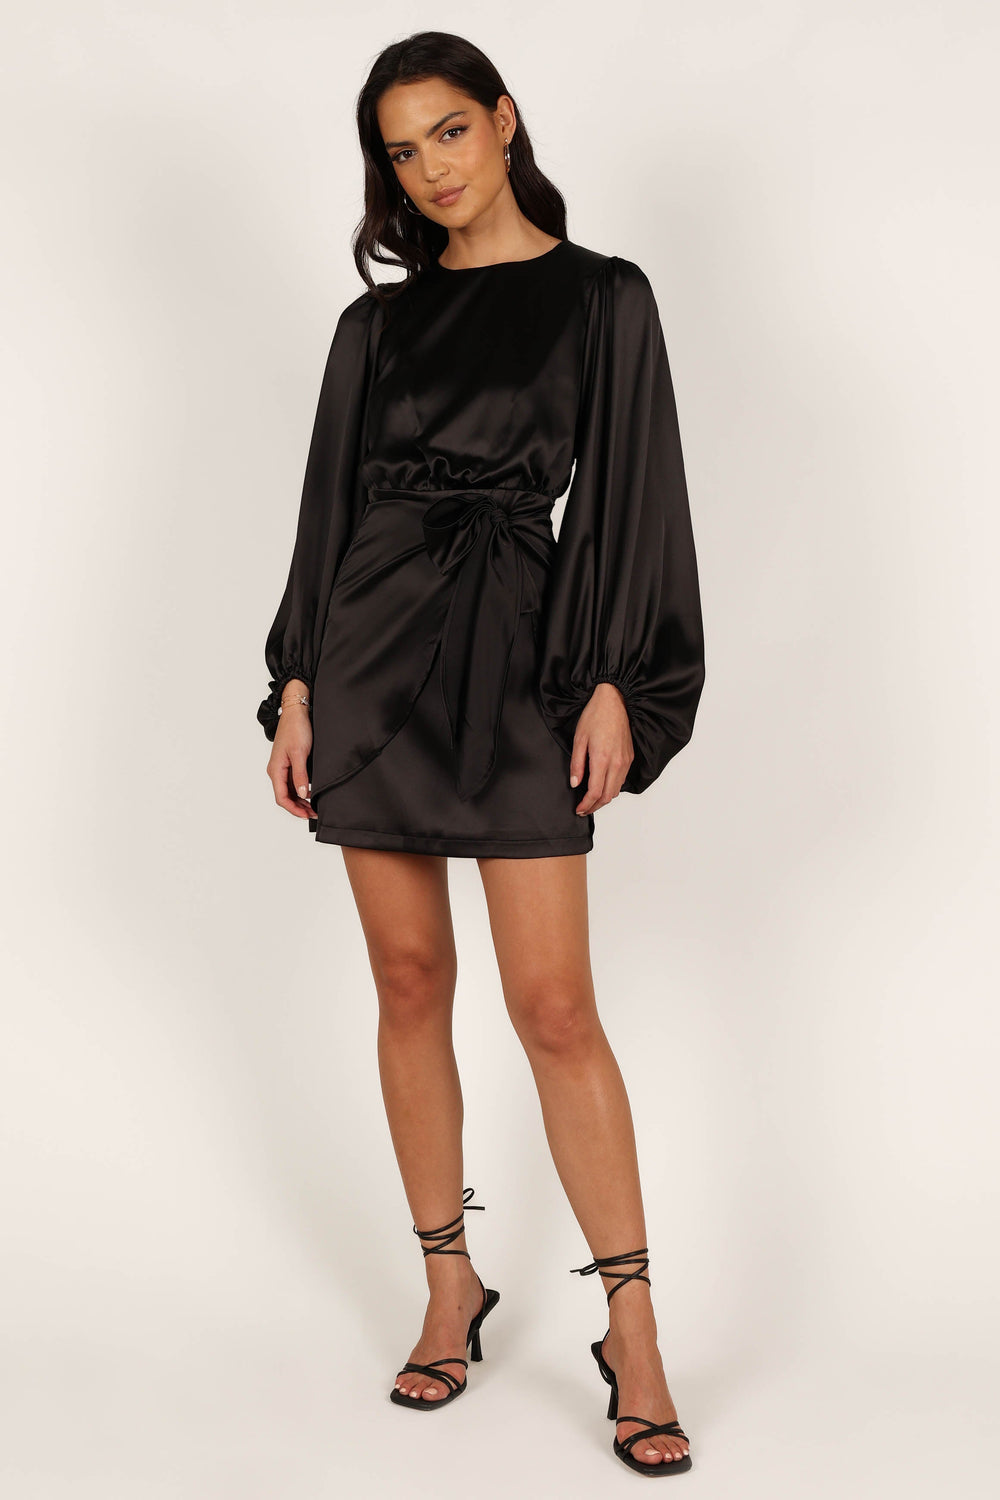 DRESSES @Opal Dress - Black